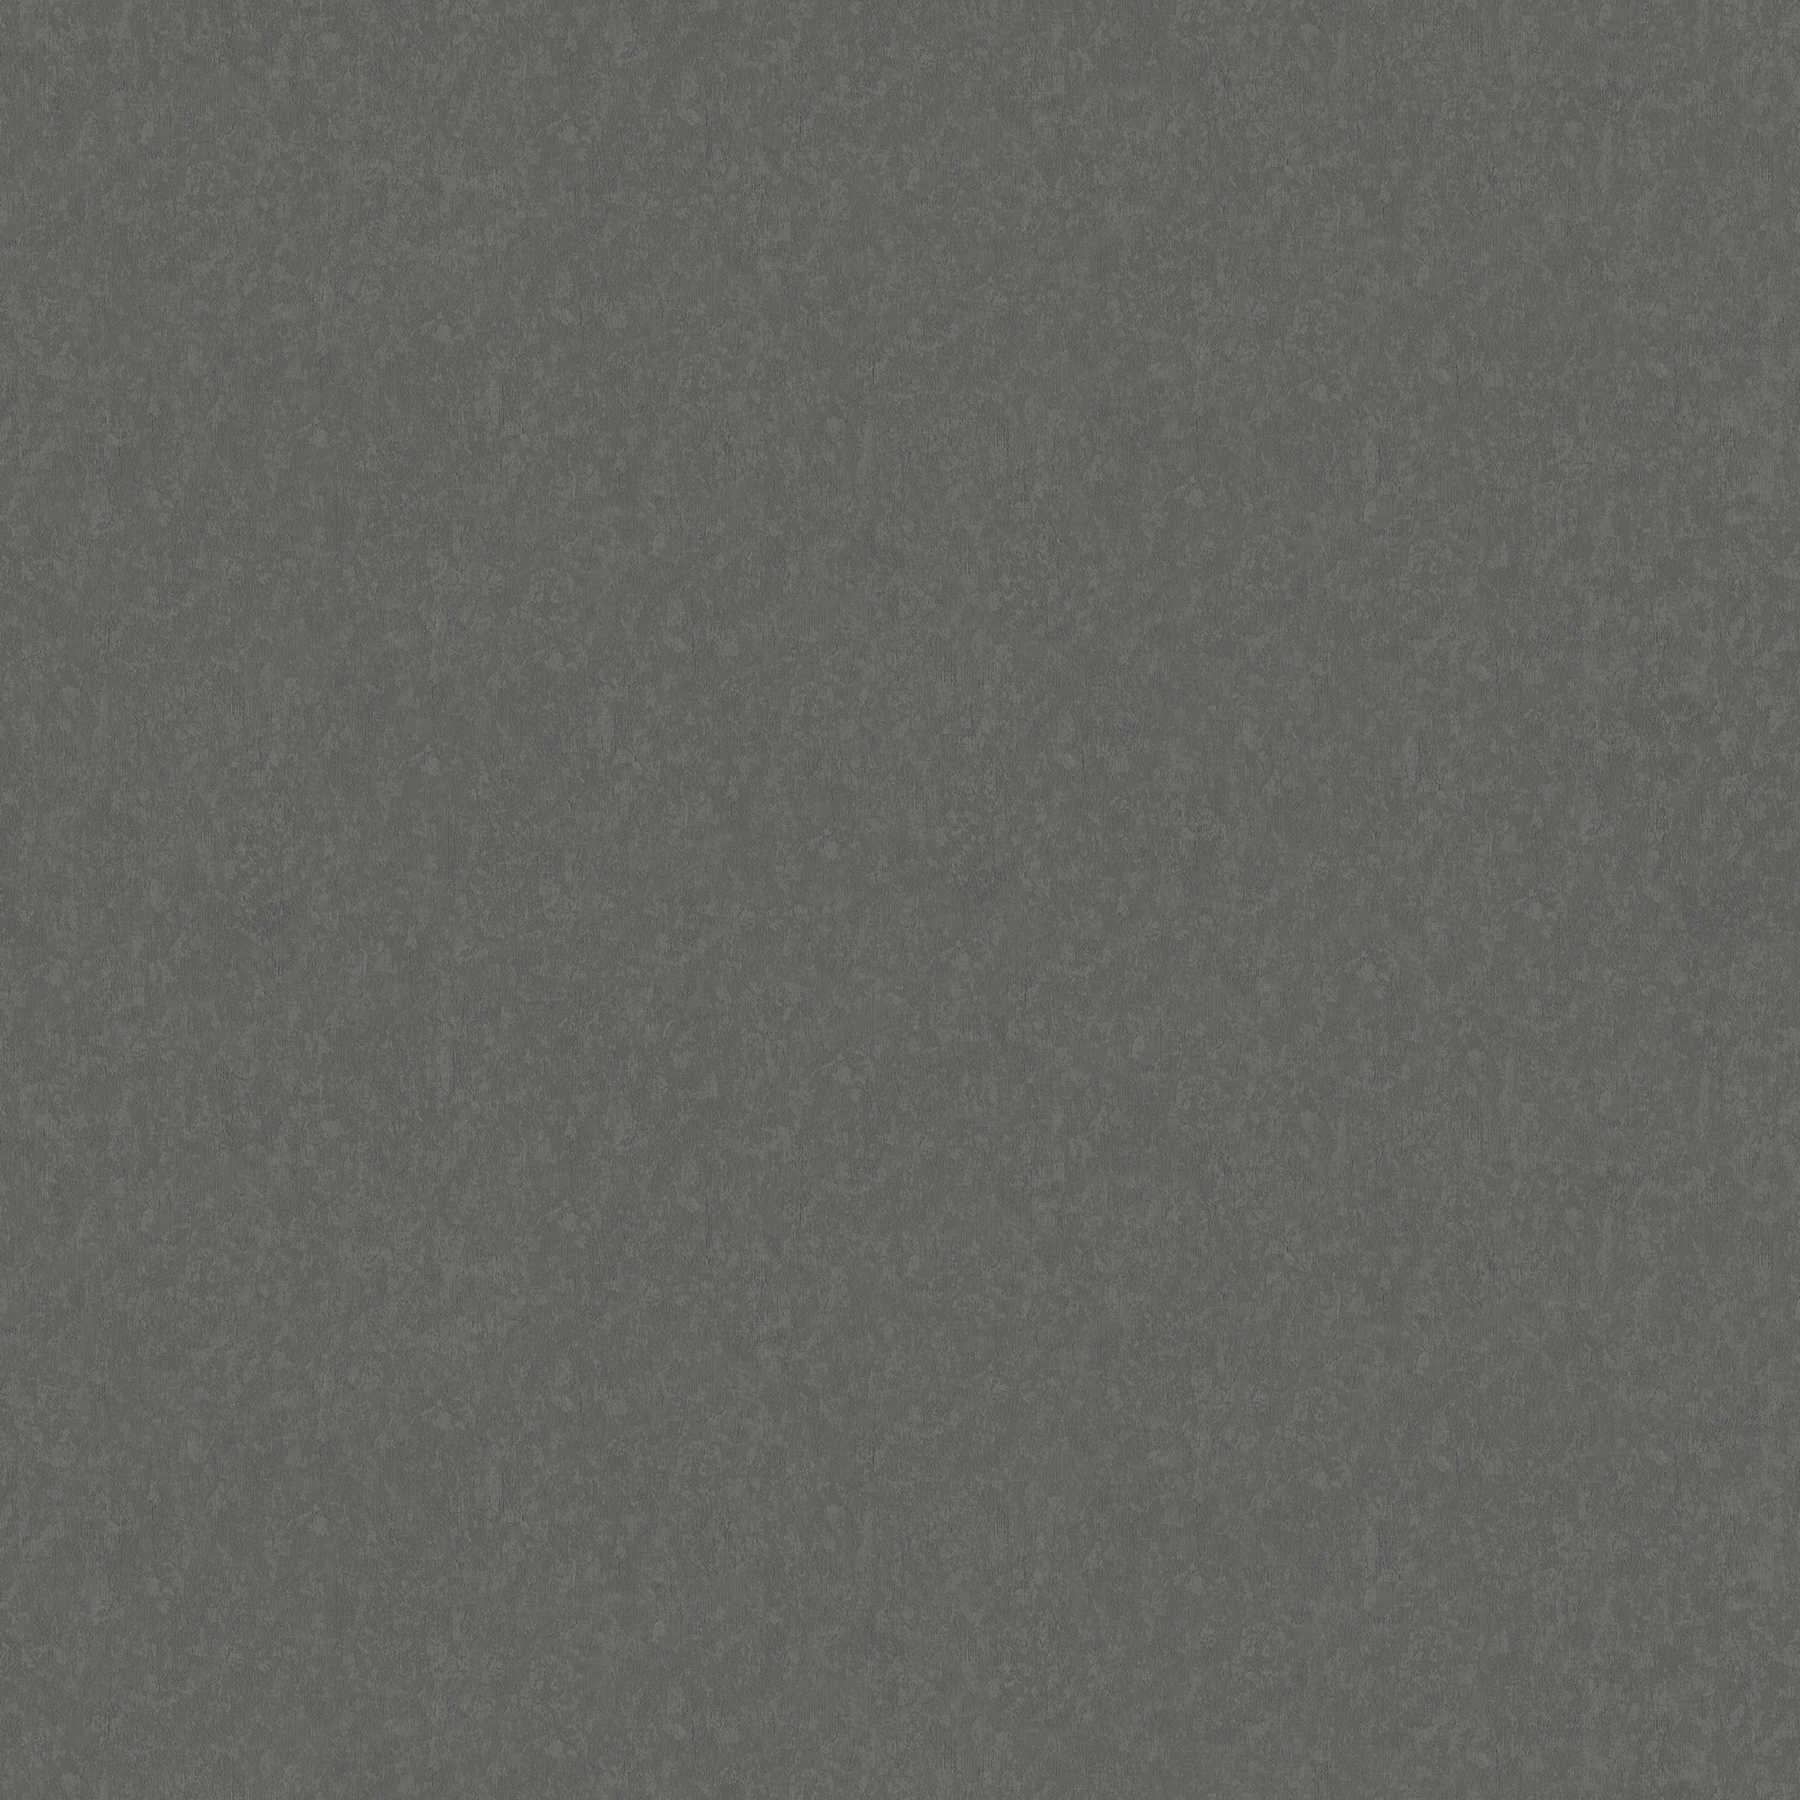         Einfarbige Tapete leicht strukturiert – Grau
    